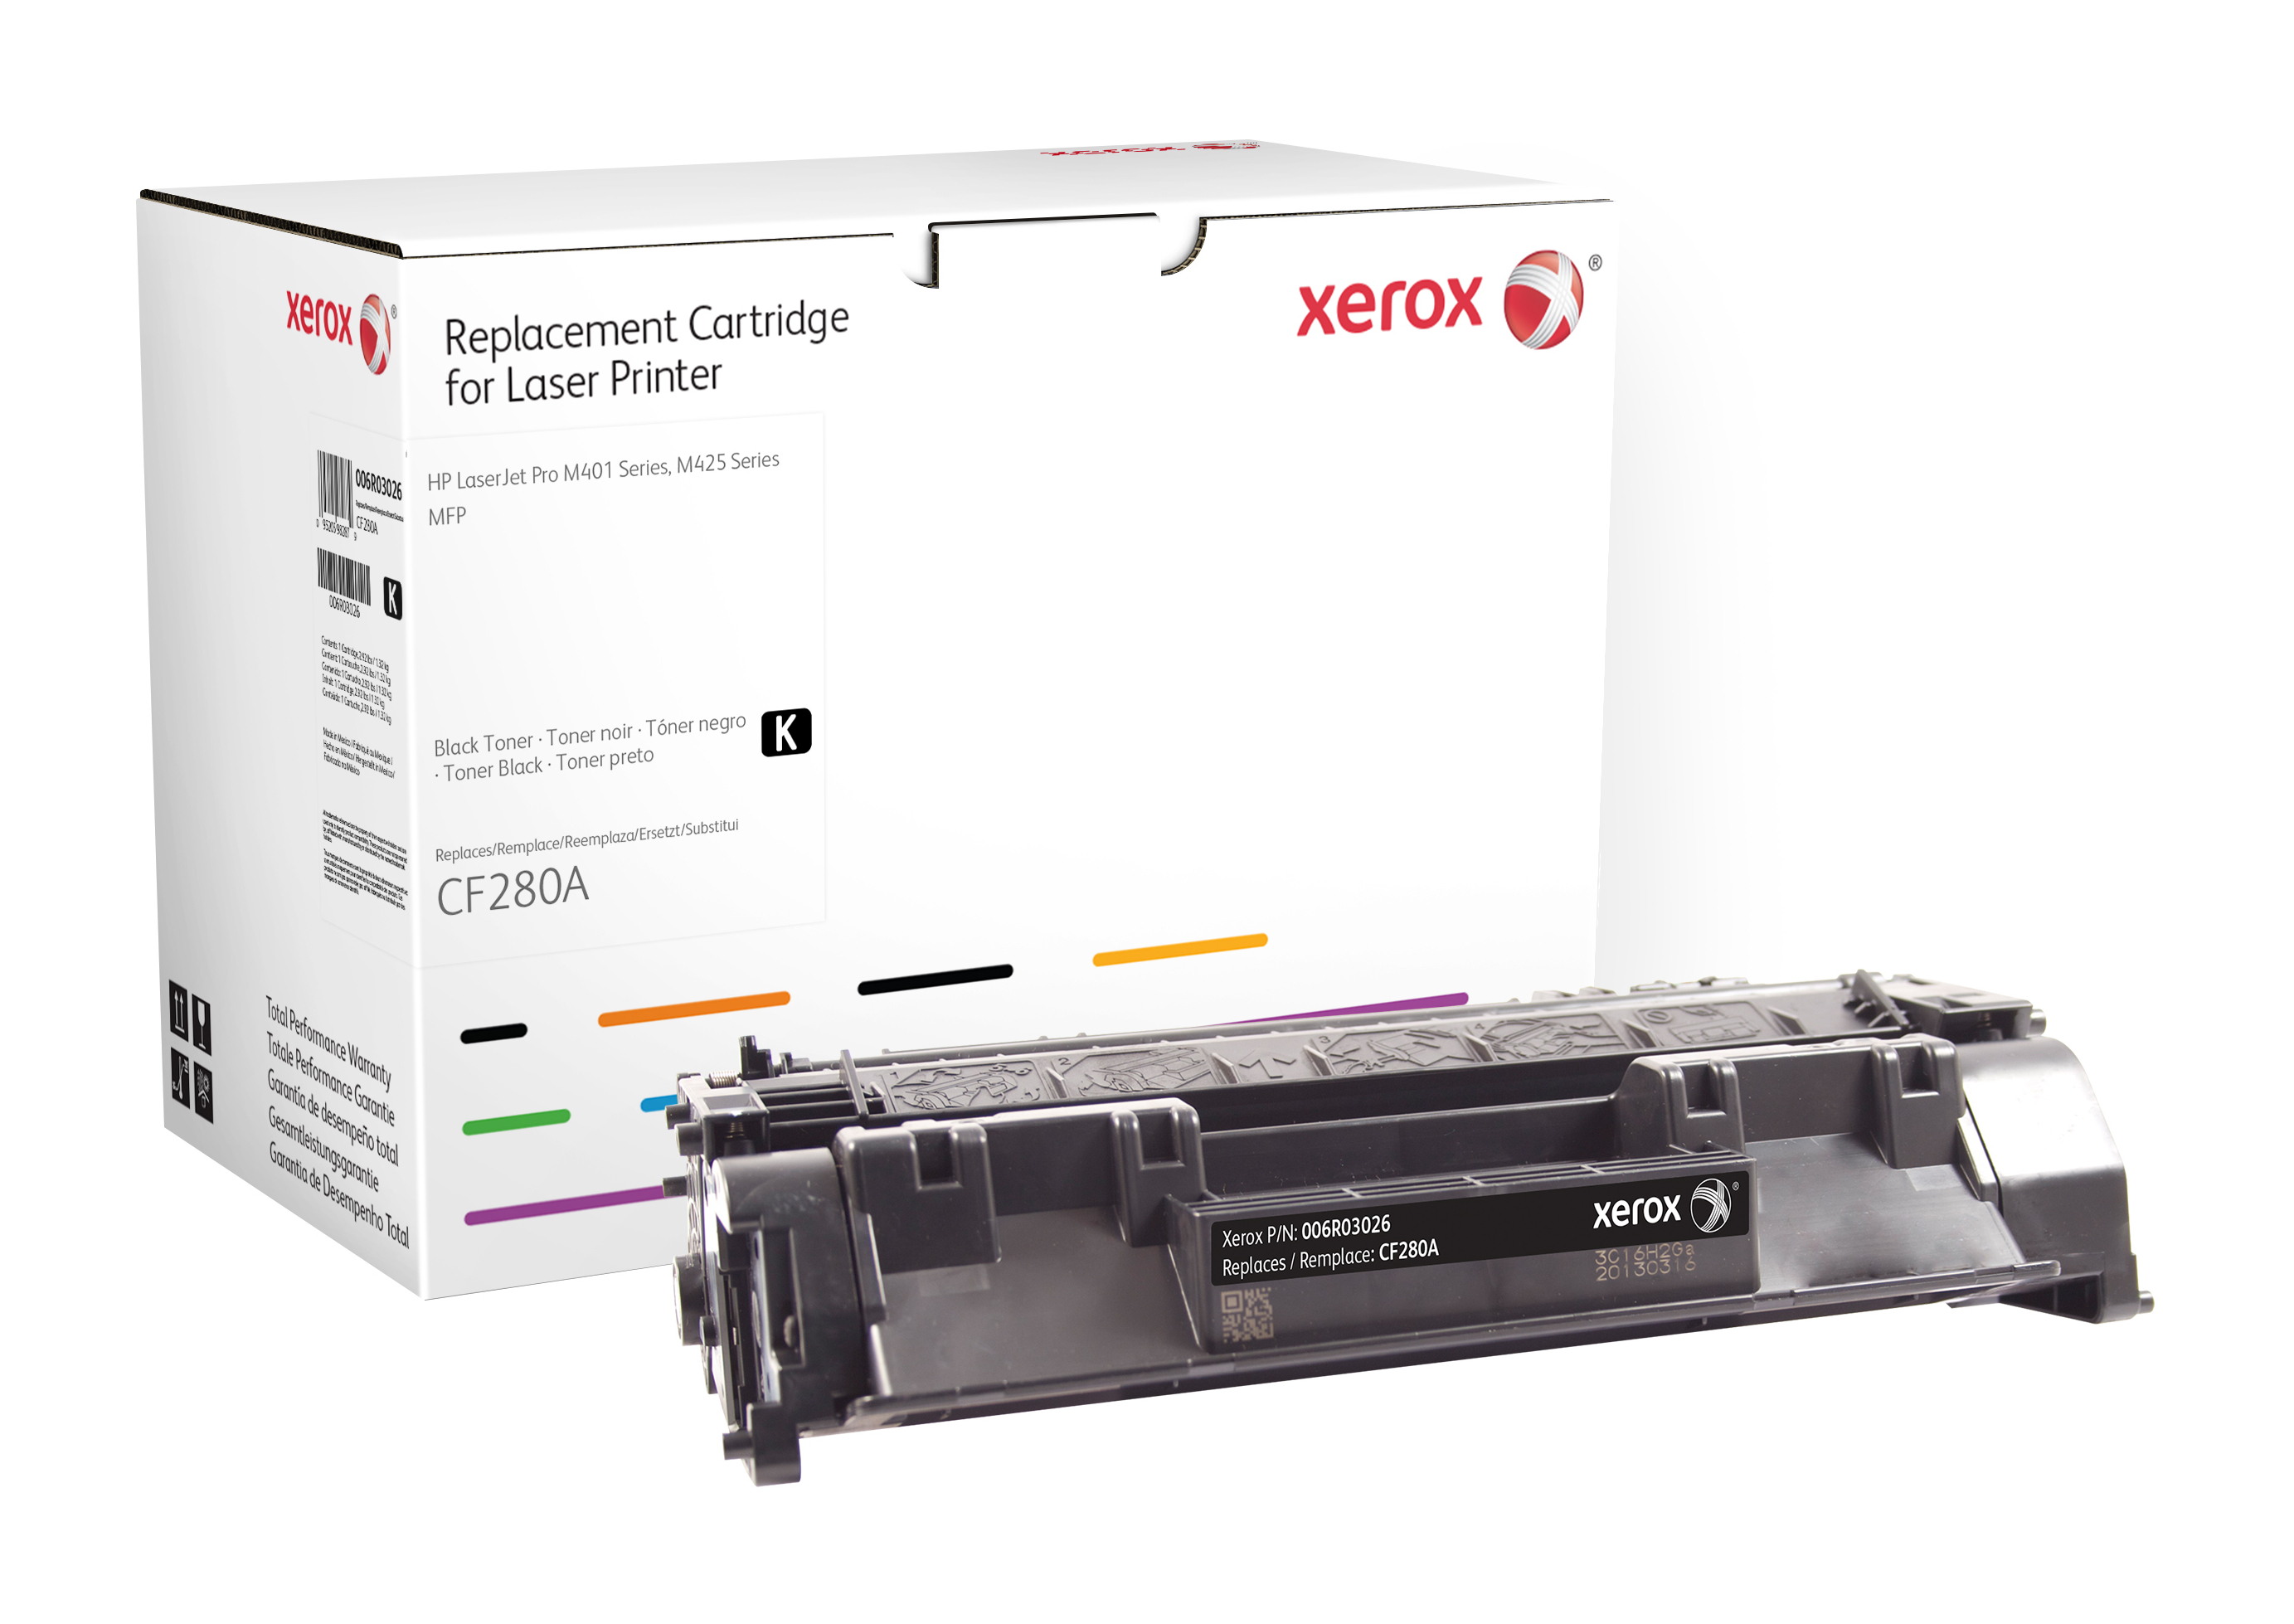 Xerox Zwarte toner cartridge. Gelijk aan HP CF280A. Compatibel met HP LaserJet Pro 400 MFP M401/M425